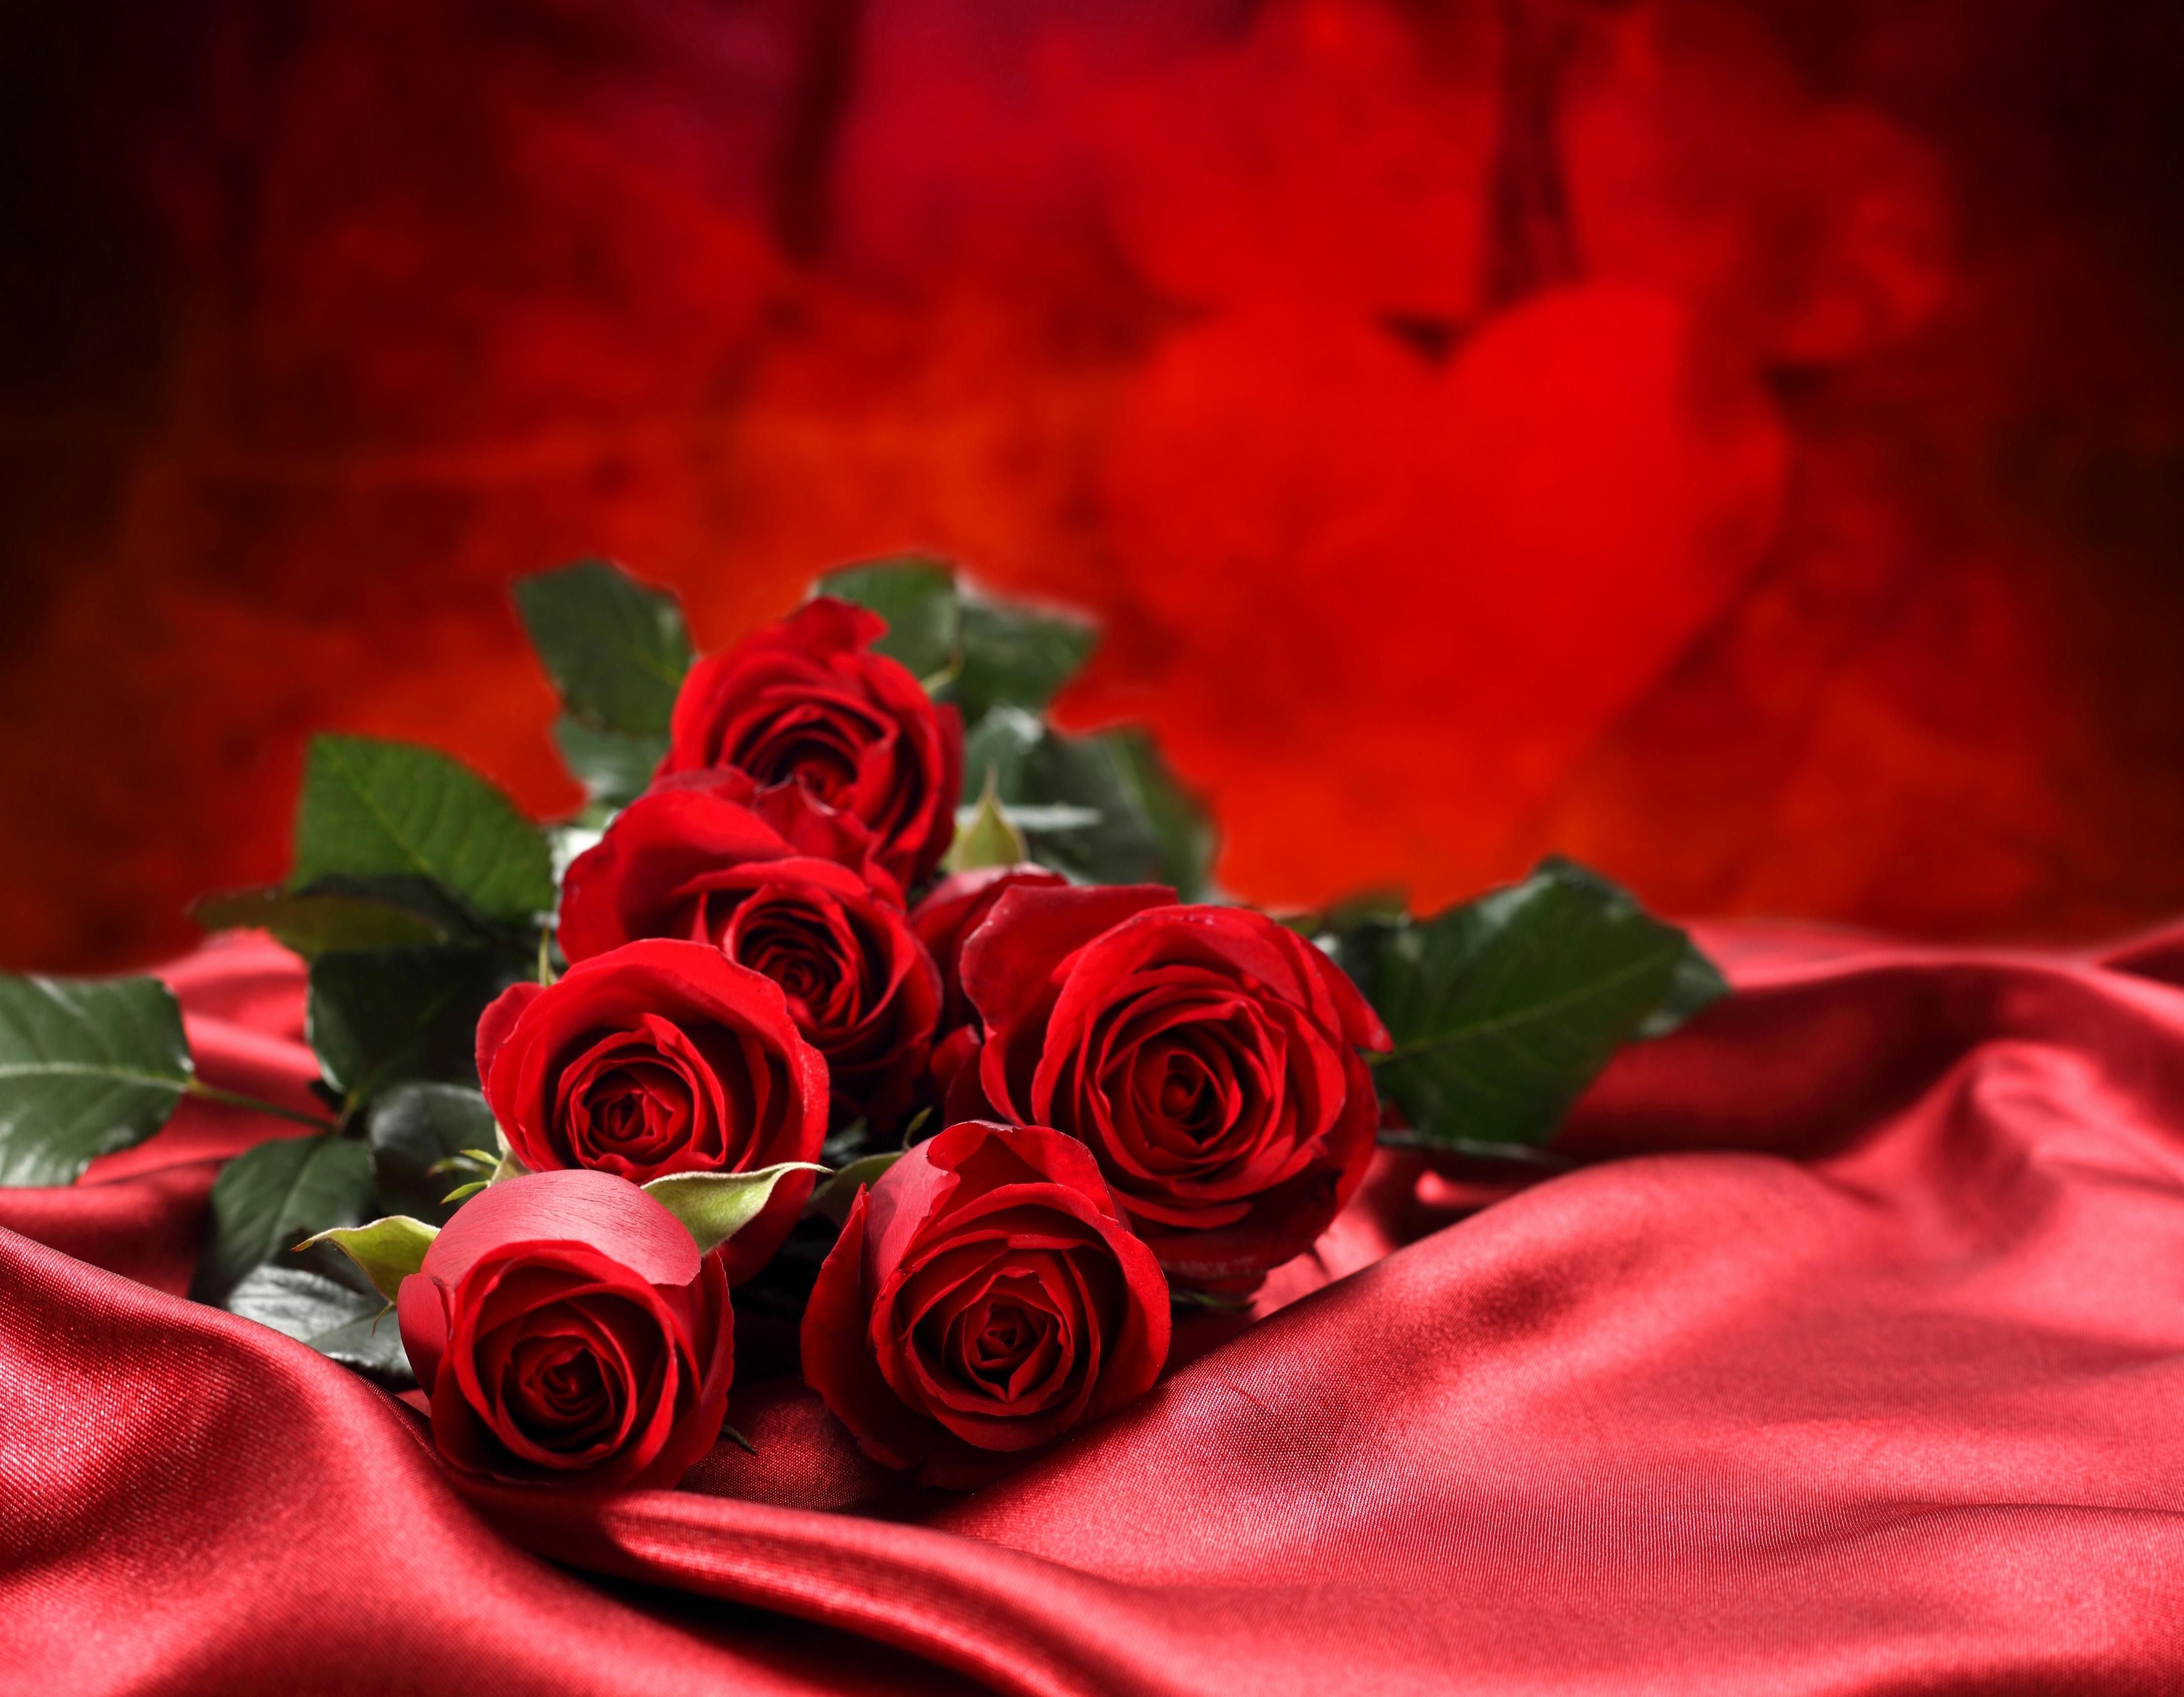 Hình ảnh hoa hồng đỏ đẹp sẽ khiến bạn phải trầm trồ khen ngợi. Với những điểm nhấn tinh tế và vẻ đẹp trời phú, nó sẽ giúp bạn tạm quên những lo toan trong cuộc sống và tưởng tượng đến một thế giới tươi sáng.